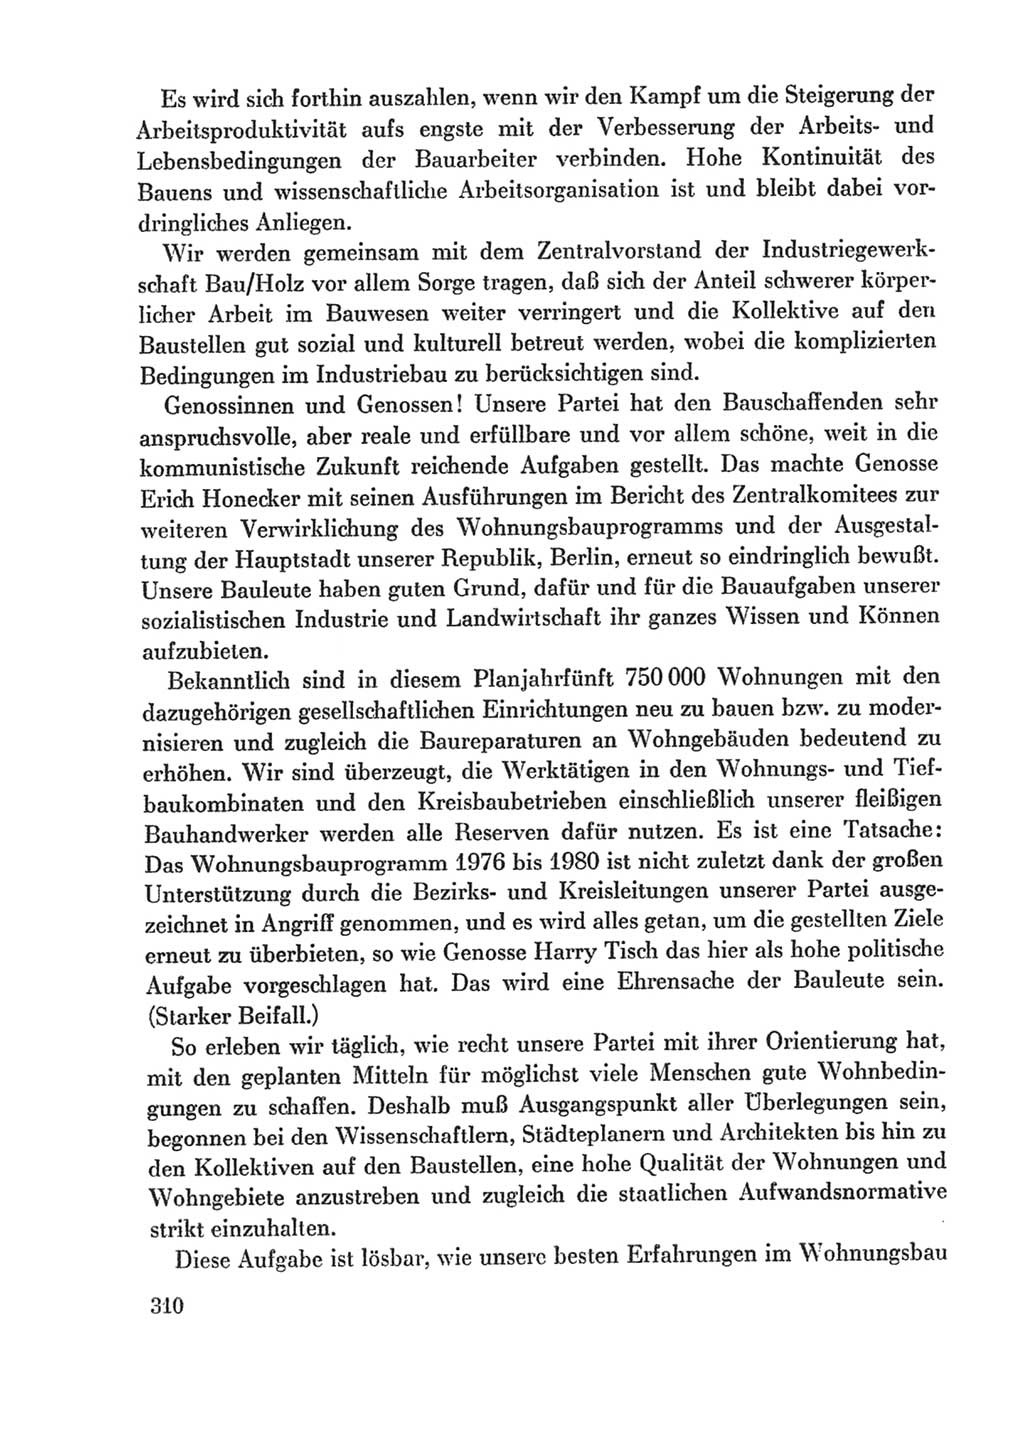 Protokoll der Verhandlungen des Ⅸ. Parteitages der Sozialistischen Einheitspartei Deutschlands (SED) [Deutsche Demokratische Republik (DDR)] 1976, Band 1, Seite 310 (Prot. Verh. Ⅸ. PT SED DDR 1976, Bd. 1, S. 310)